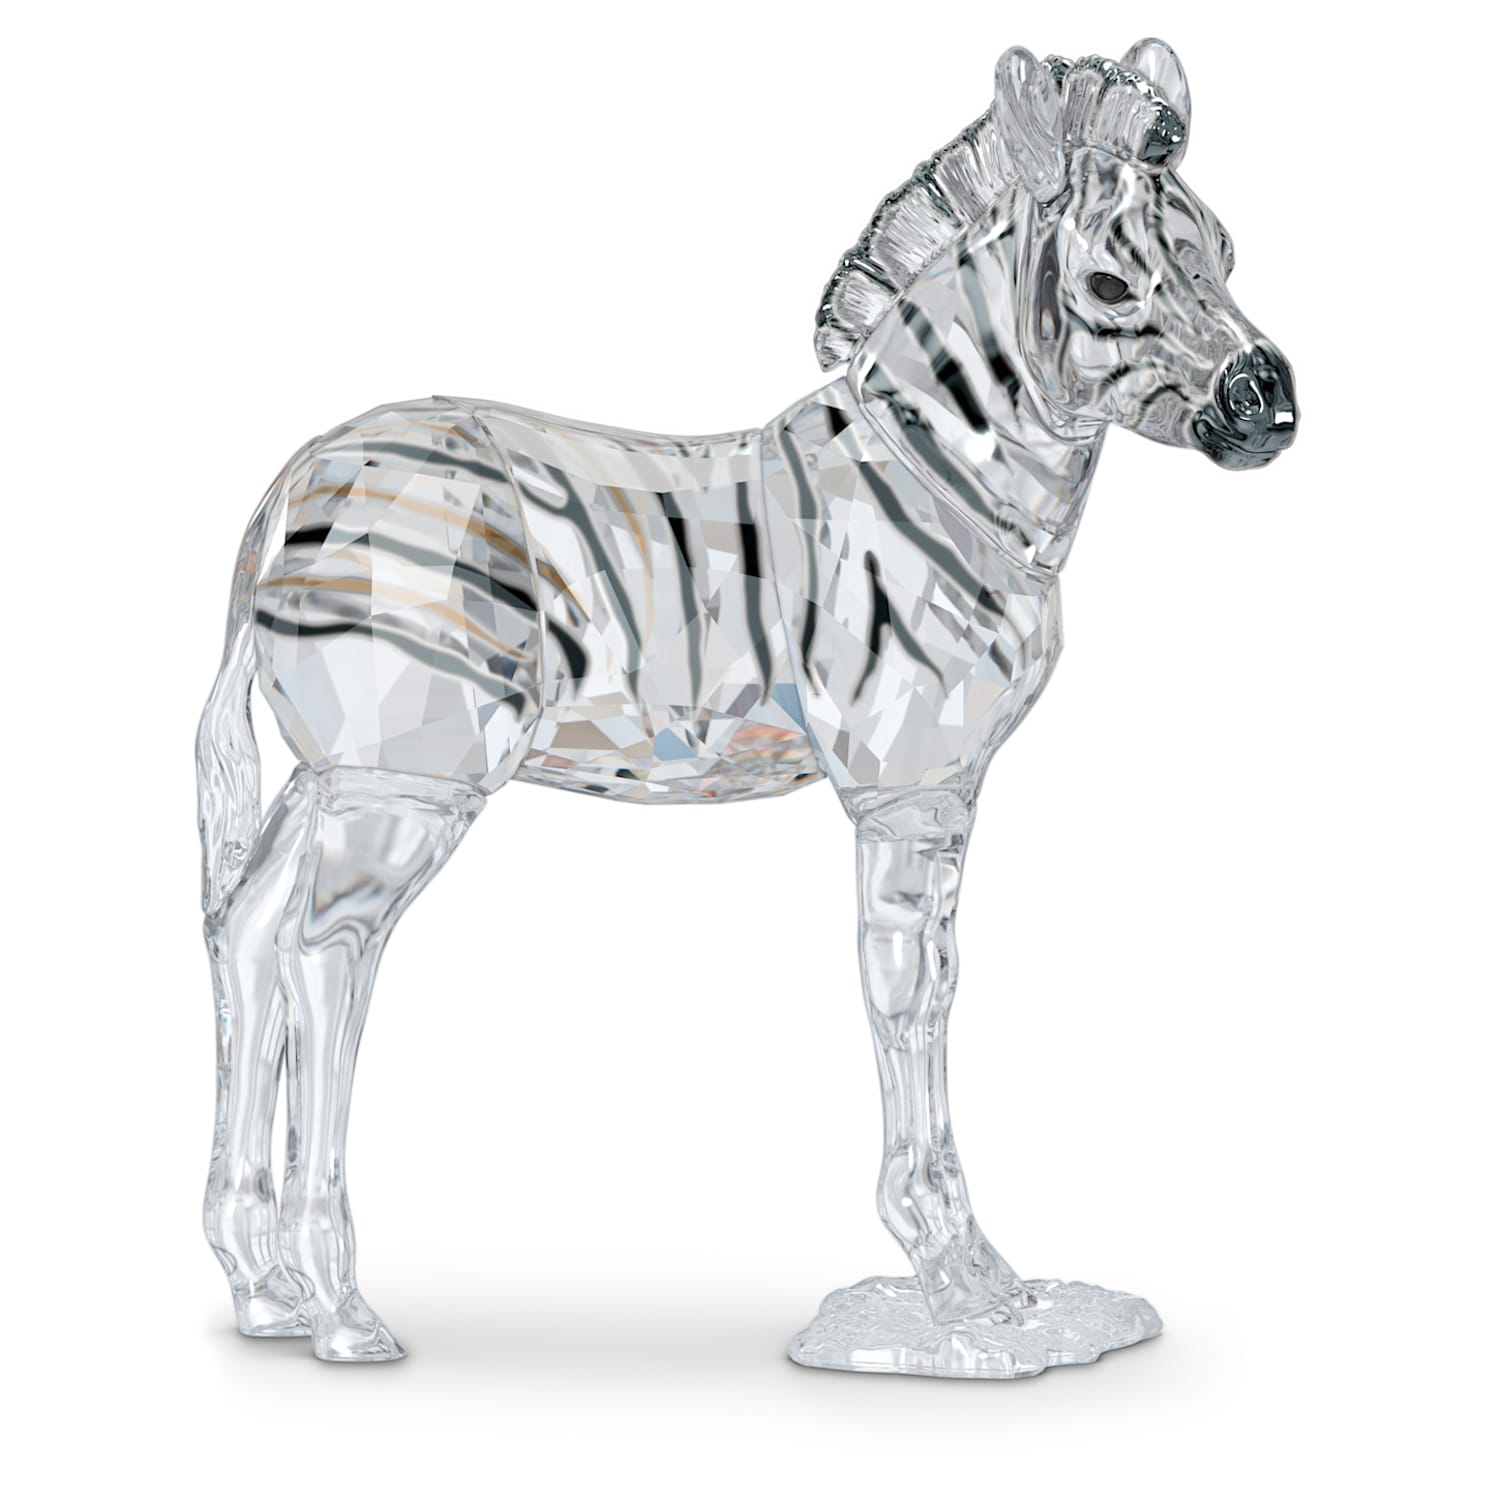 Objets d'art Miniature Glass Zebra Figurine Ornament 